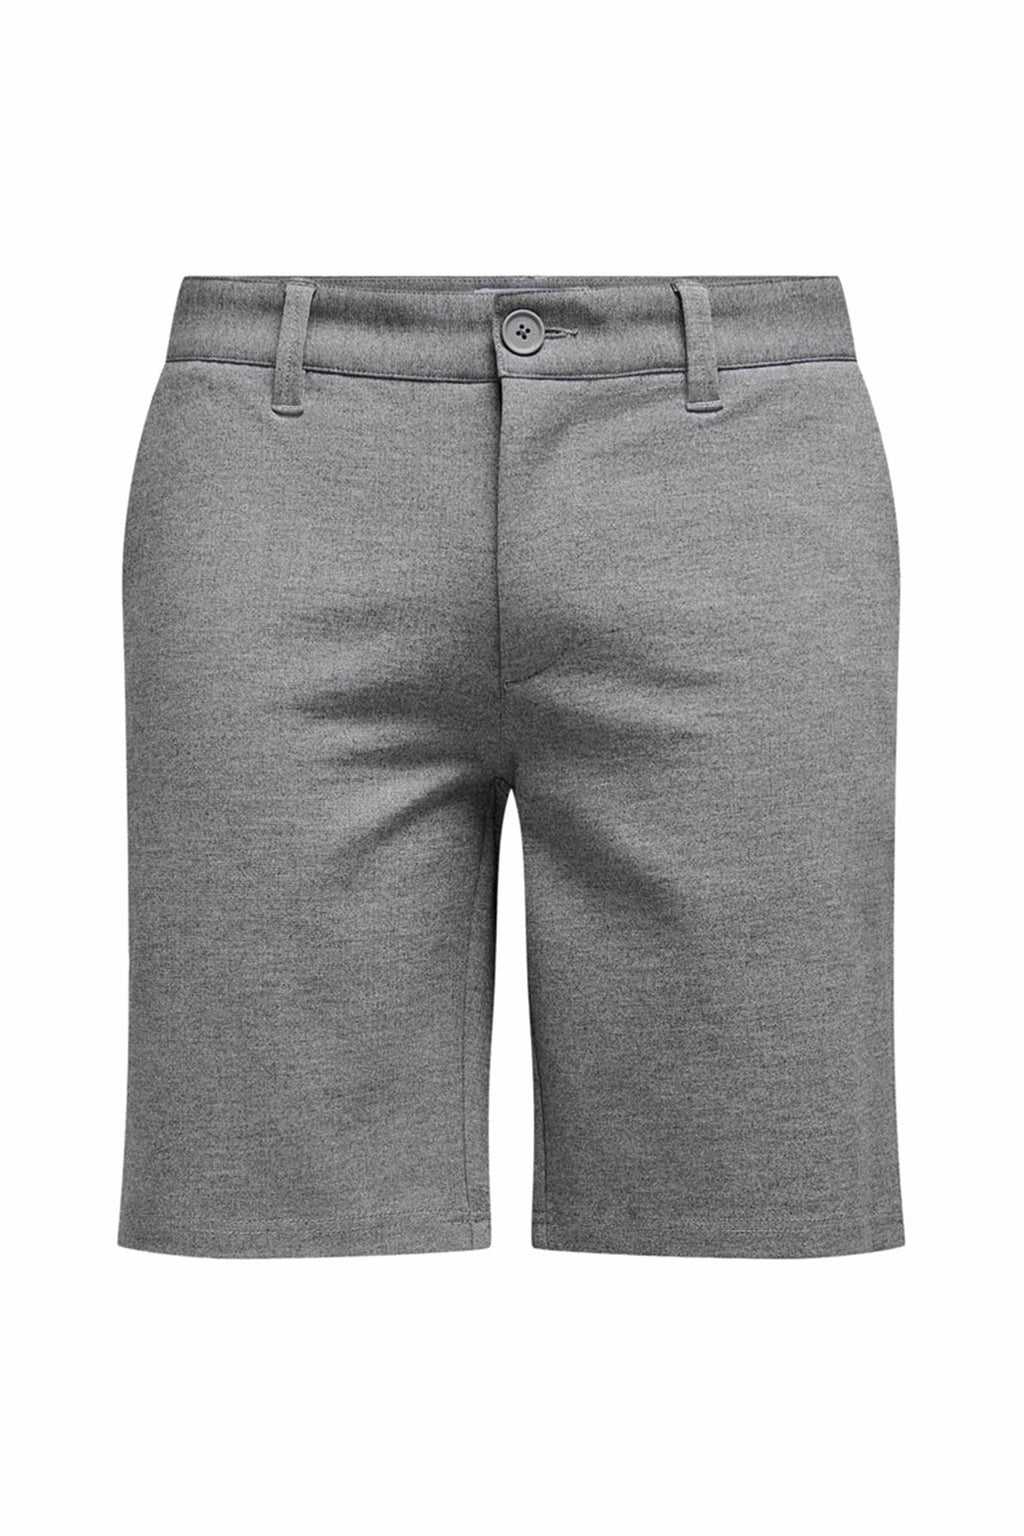 Performanse kratke hlače - siva melanga